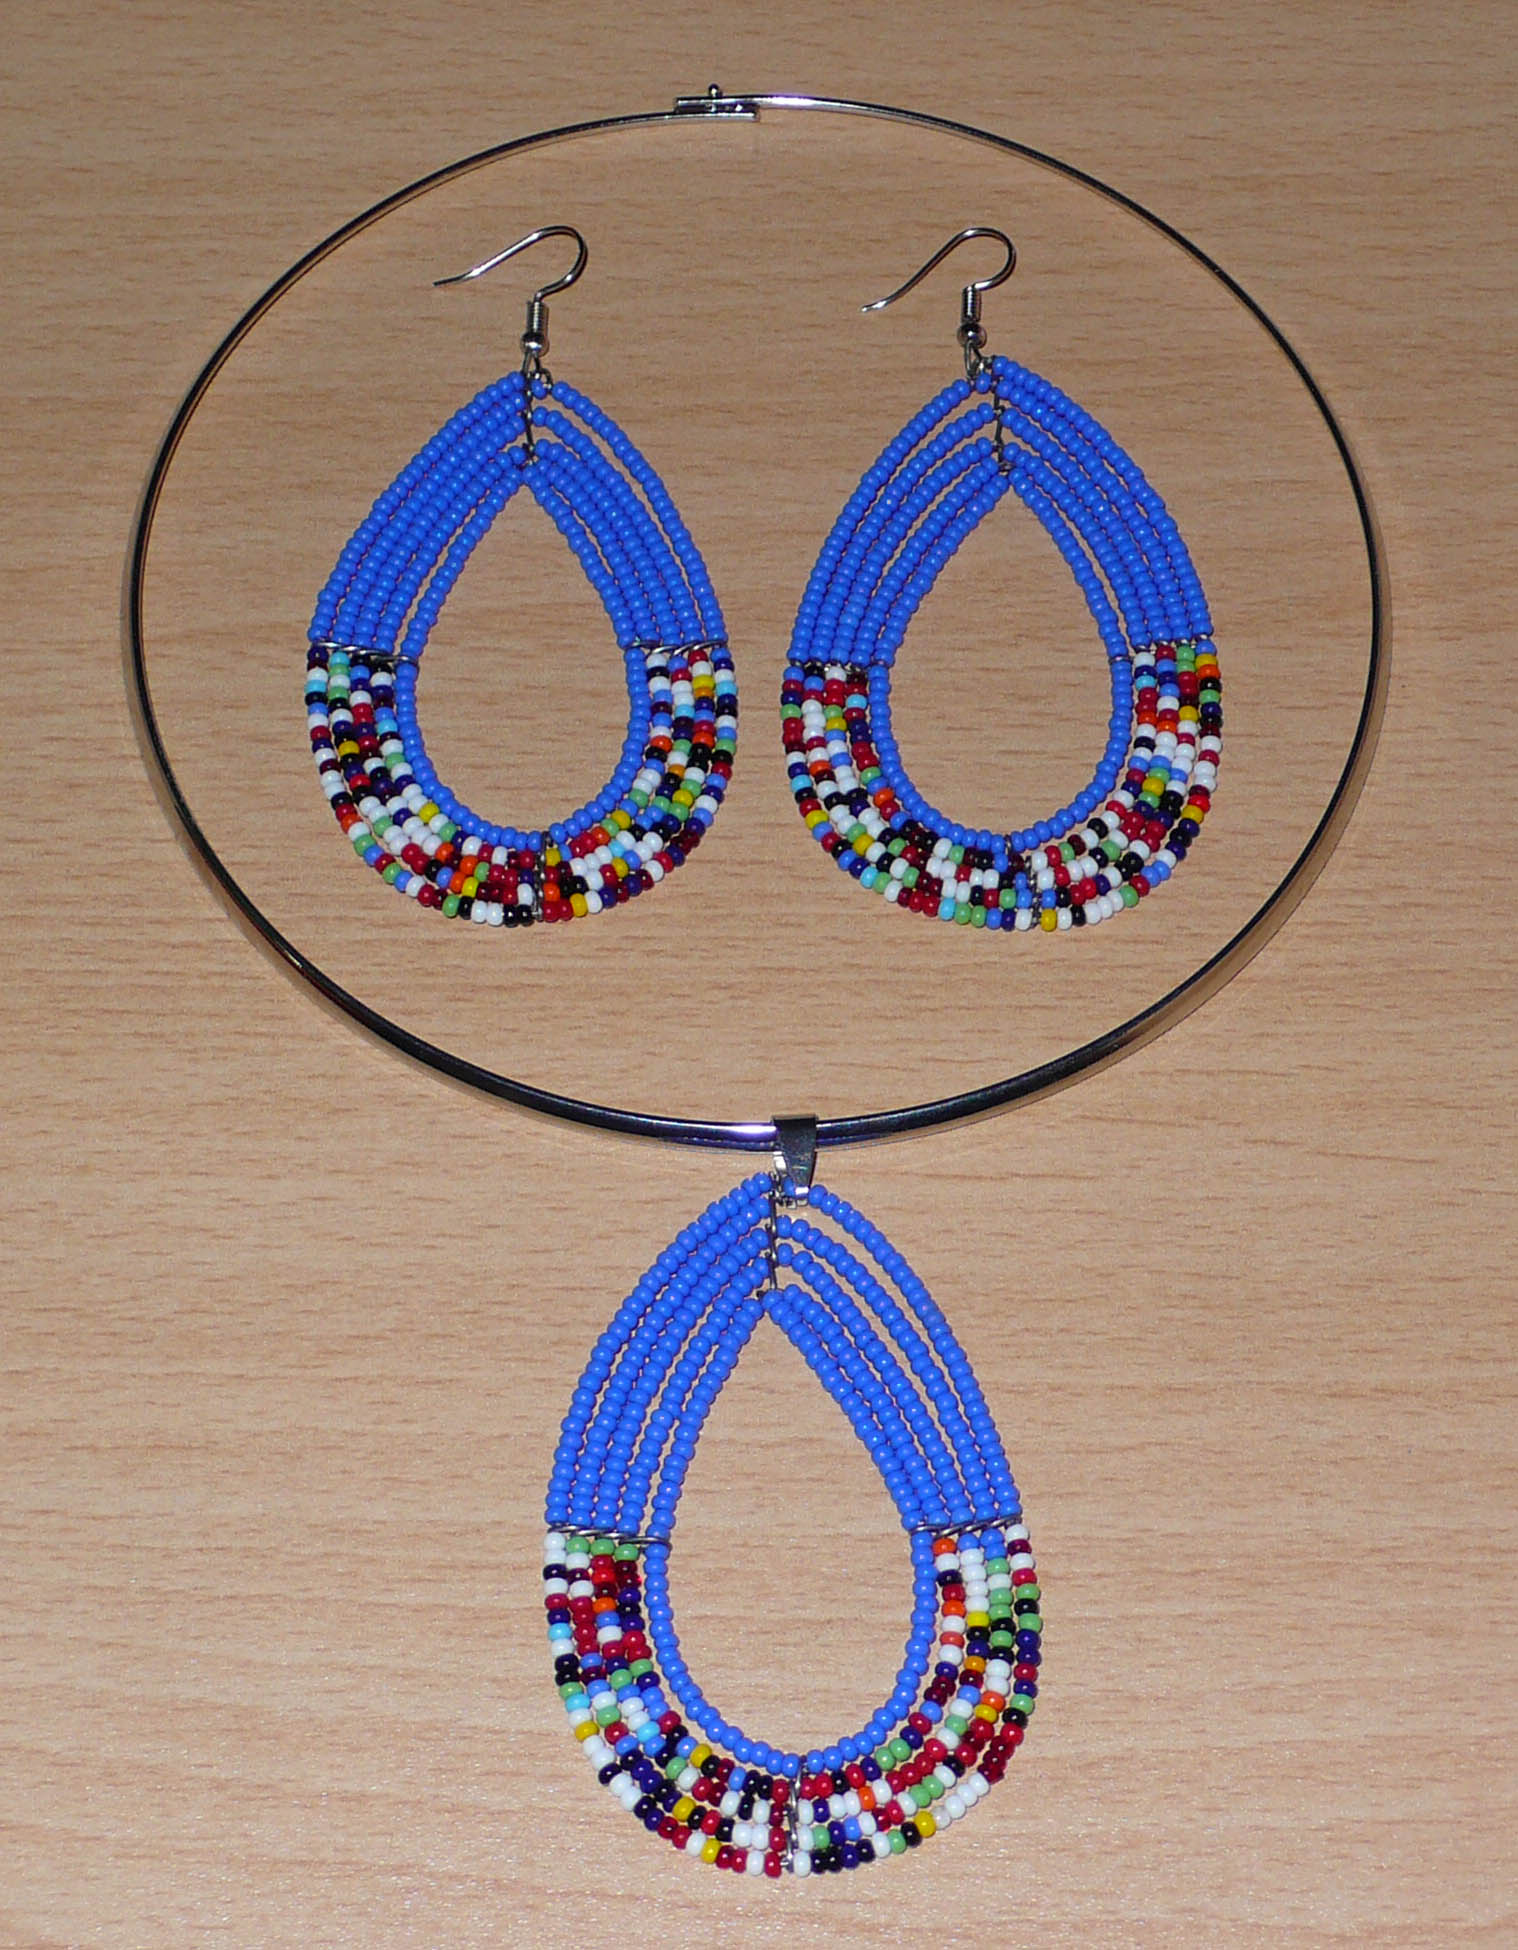 Parure de bijoux Massai bleus composée d'un ras-de-cou en laiton argenté orné d'un long pendentif fait de perles de rocaille bleues et multicolores fixées sur cinq rangées de fils de fer montés en forme de goutte, et d'une paire de longues boucles d'oreilles assorties.